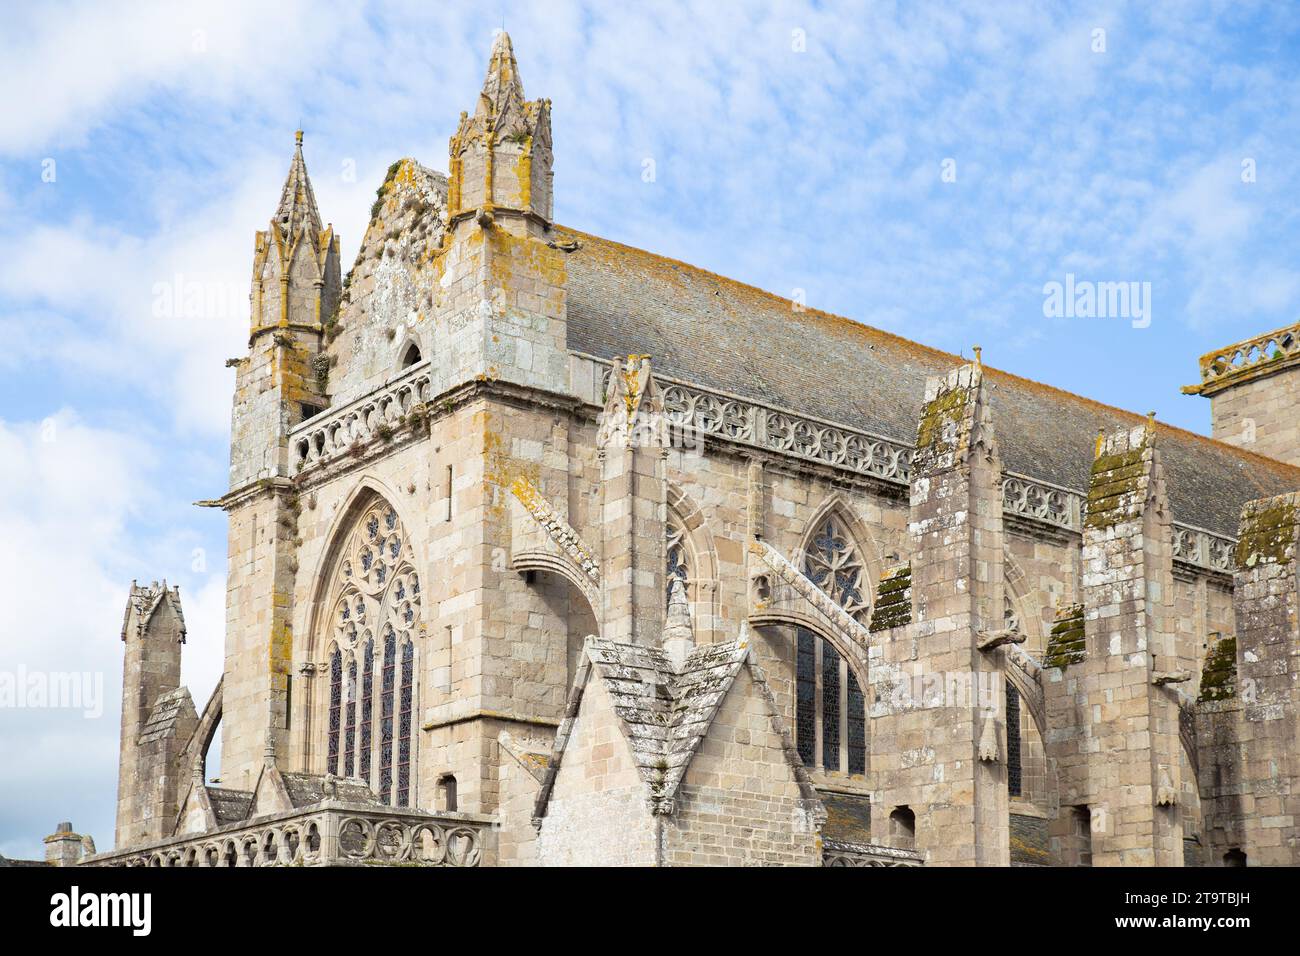 Cloître de la cathédrale in Tréguier, France Stock Photo